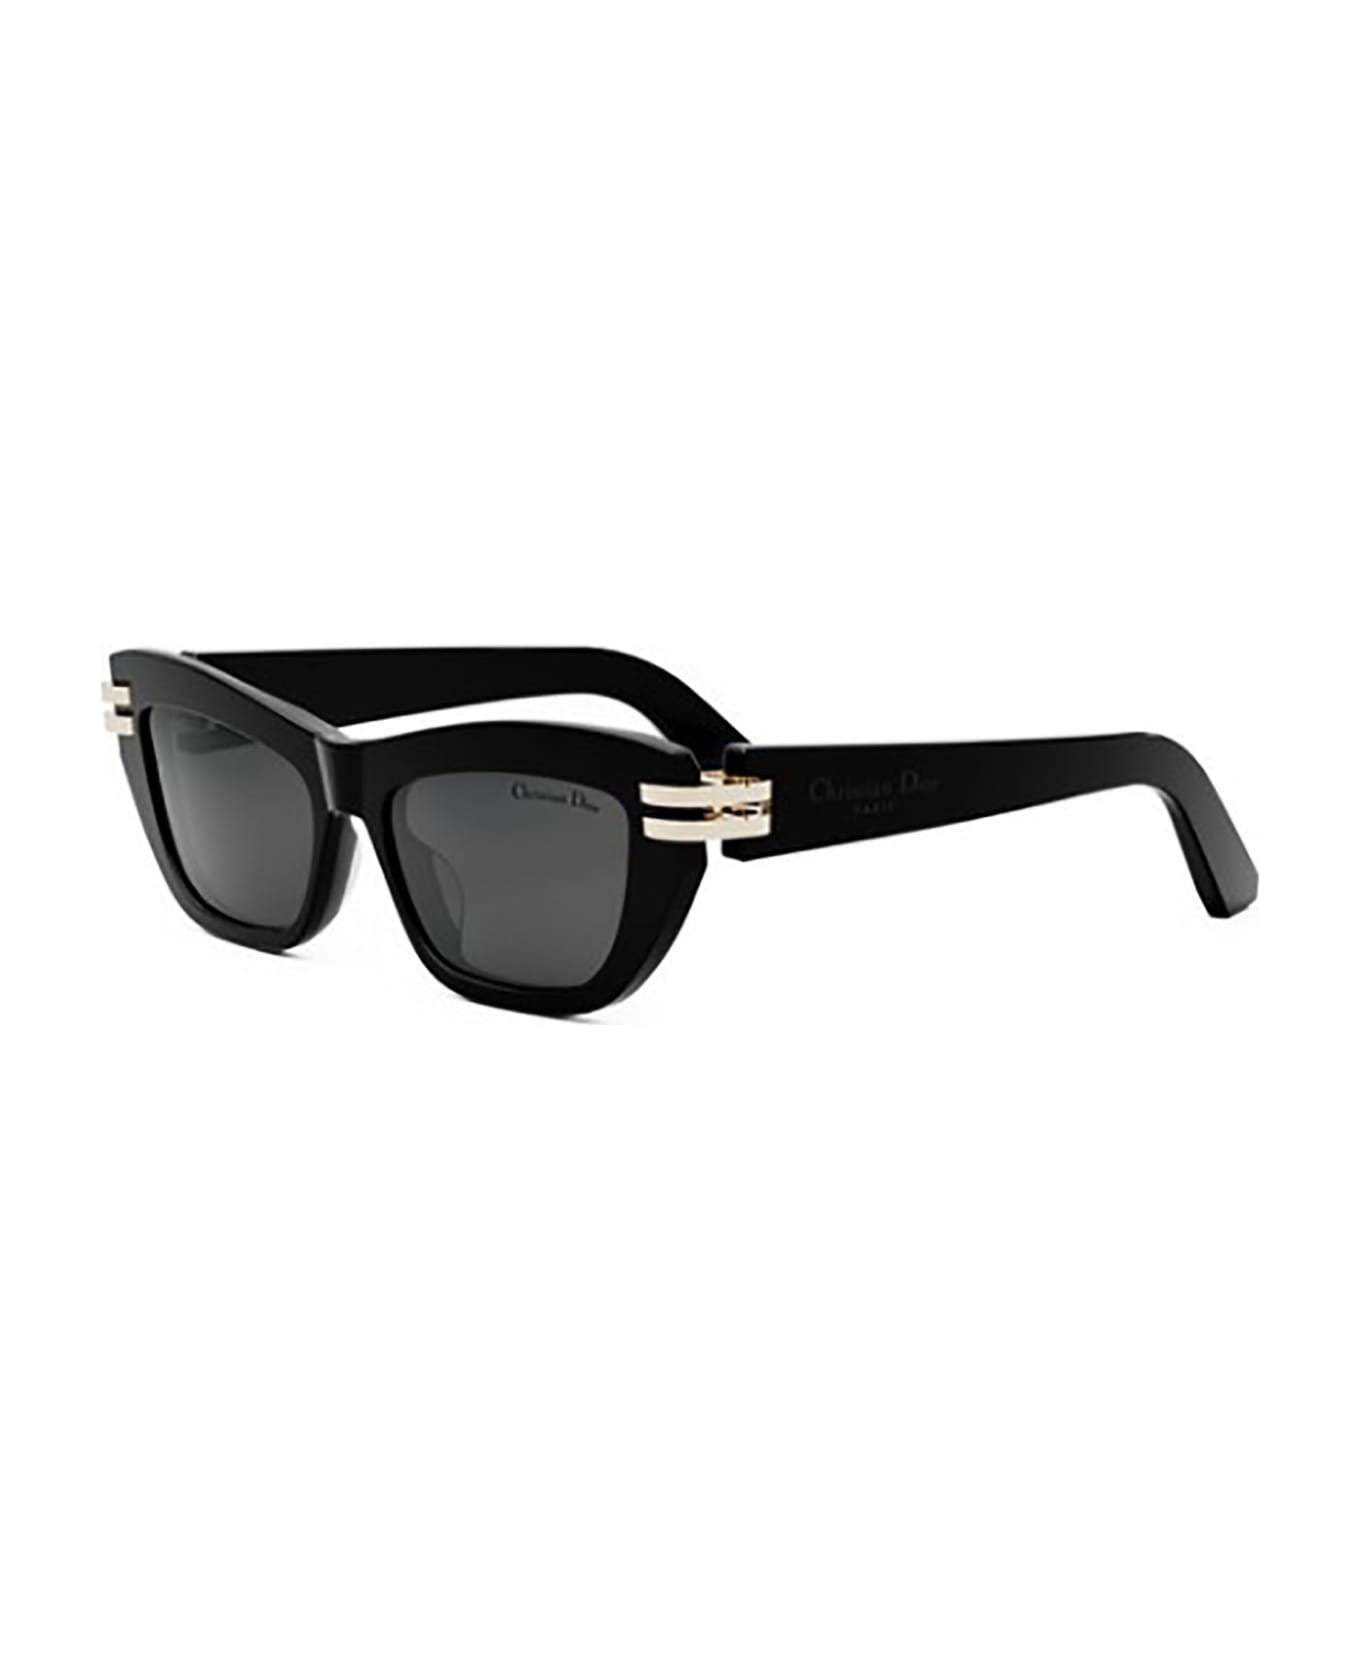 Dior CDIOR B2U Sunglasses サングラス